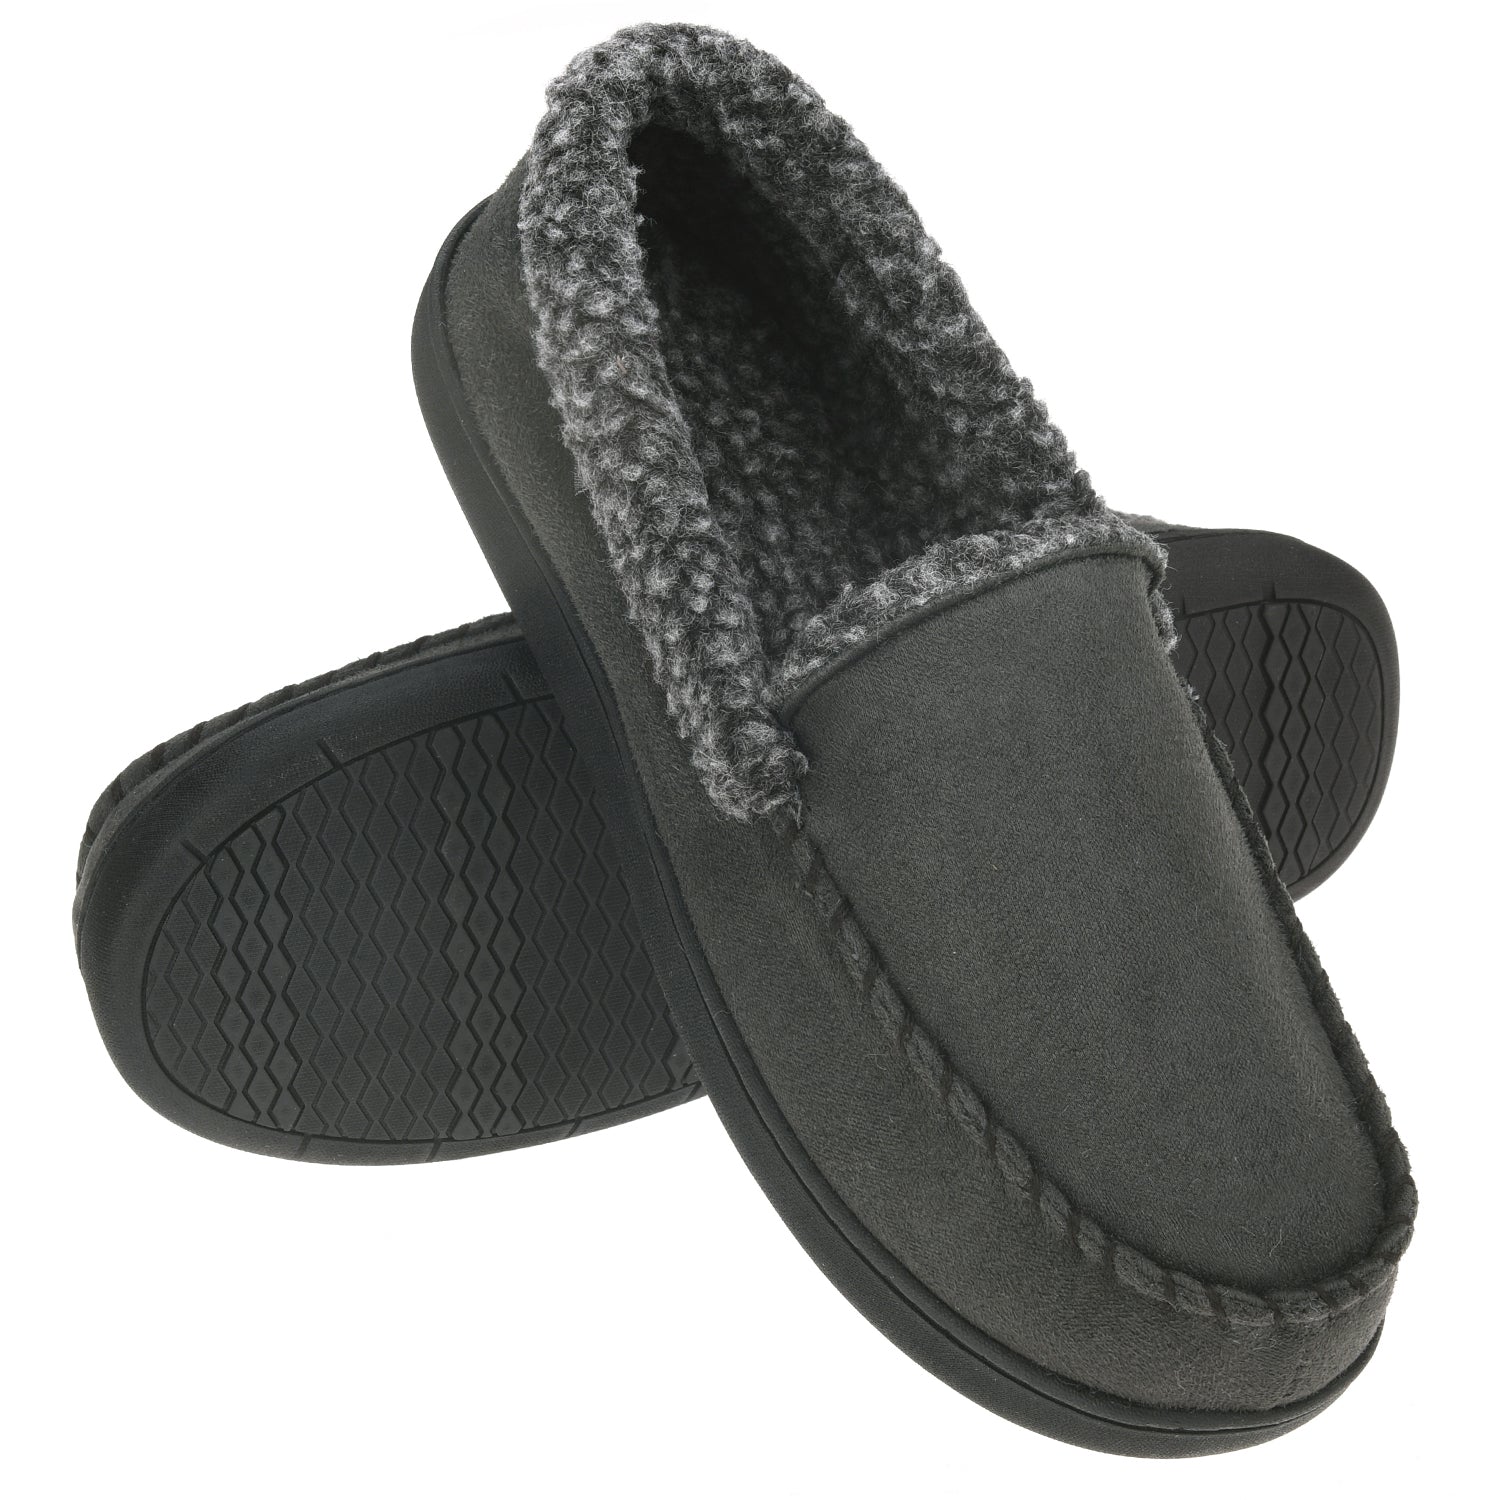 memory foam moccasin slippers